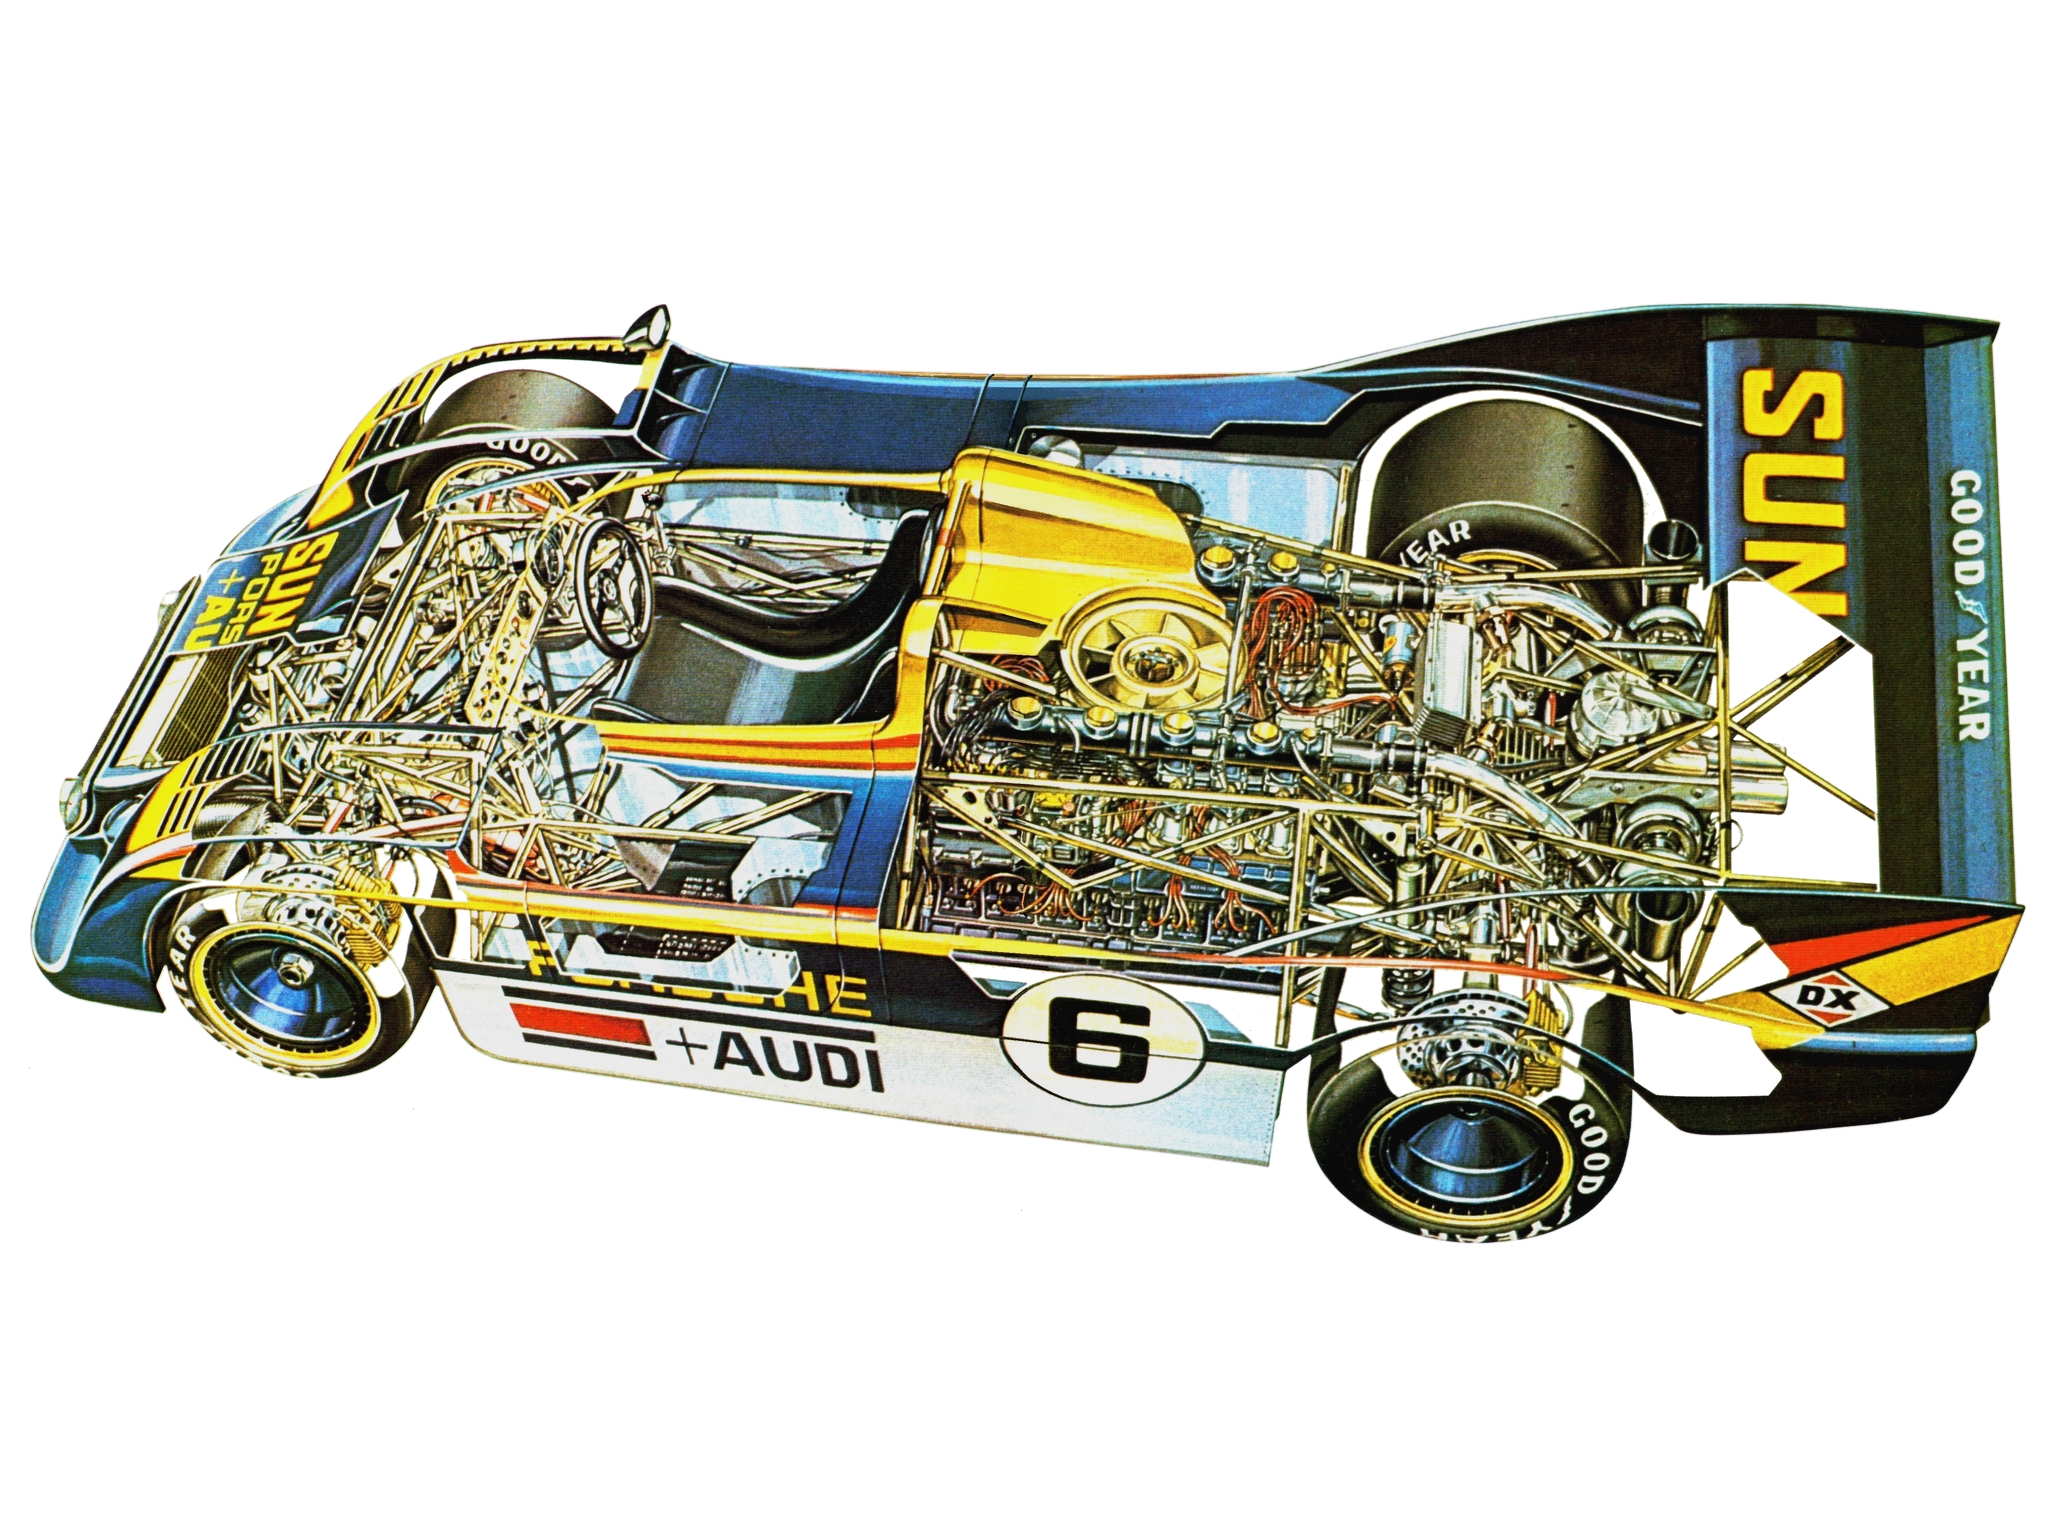 1973, Porsche, 917 30, Can am, Spyder,  002 003 , Race, Racing, 917, Interior, Engine Wallpaper